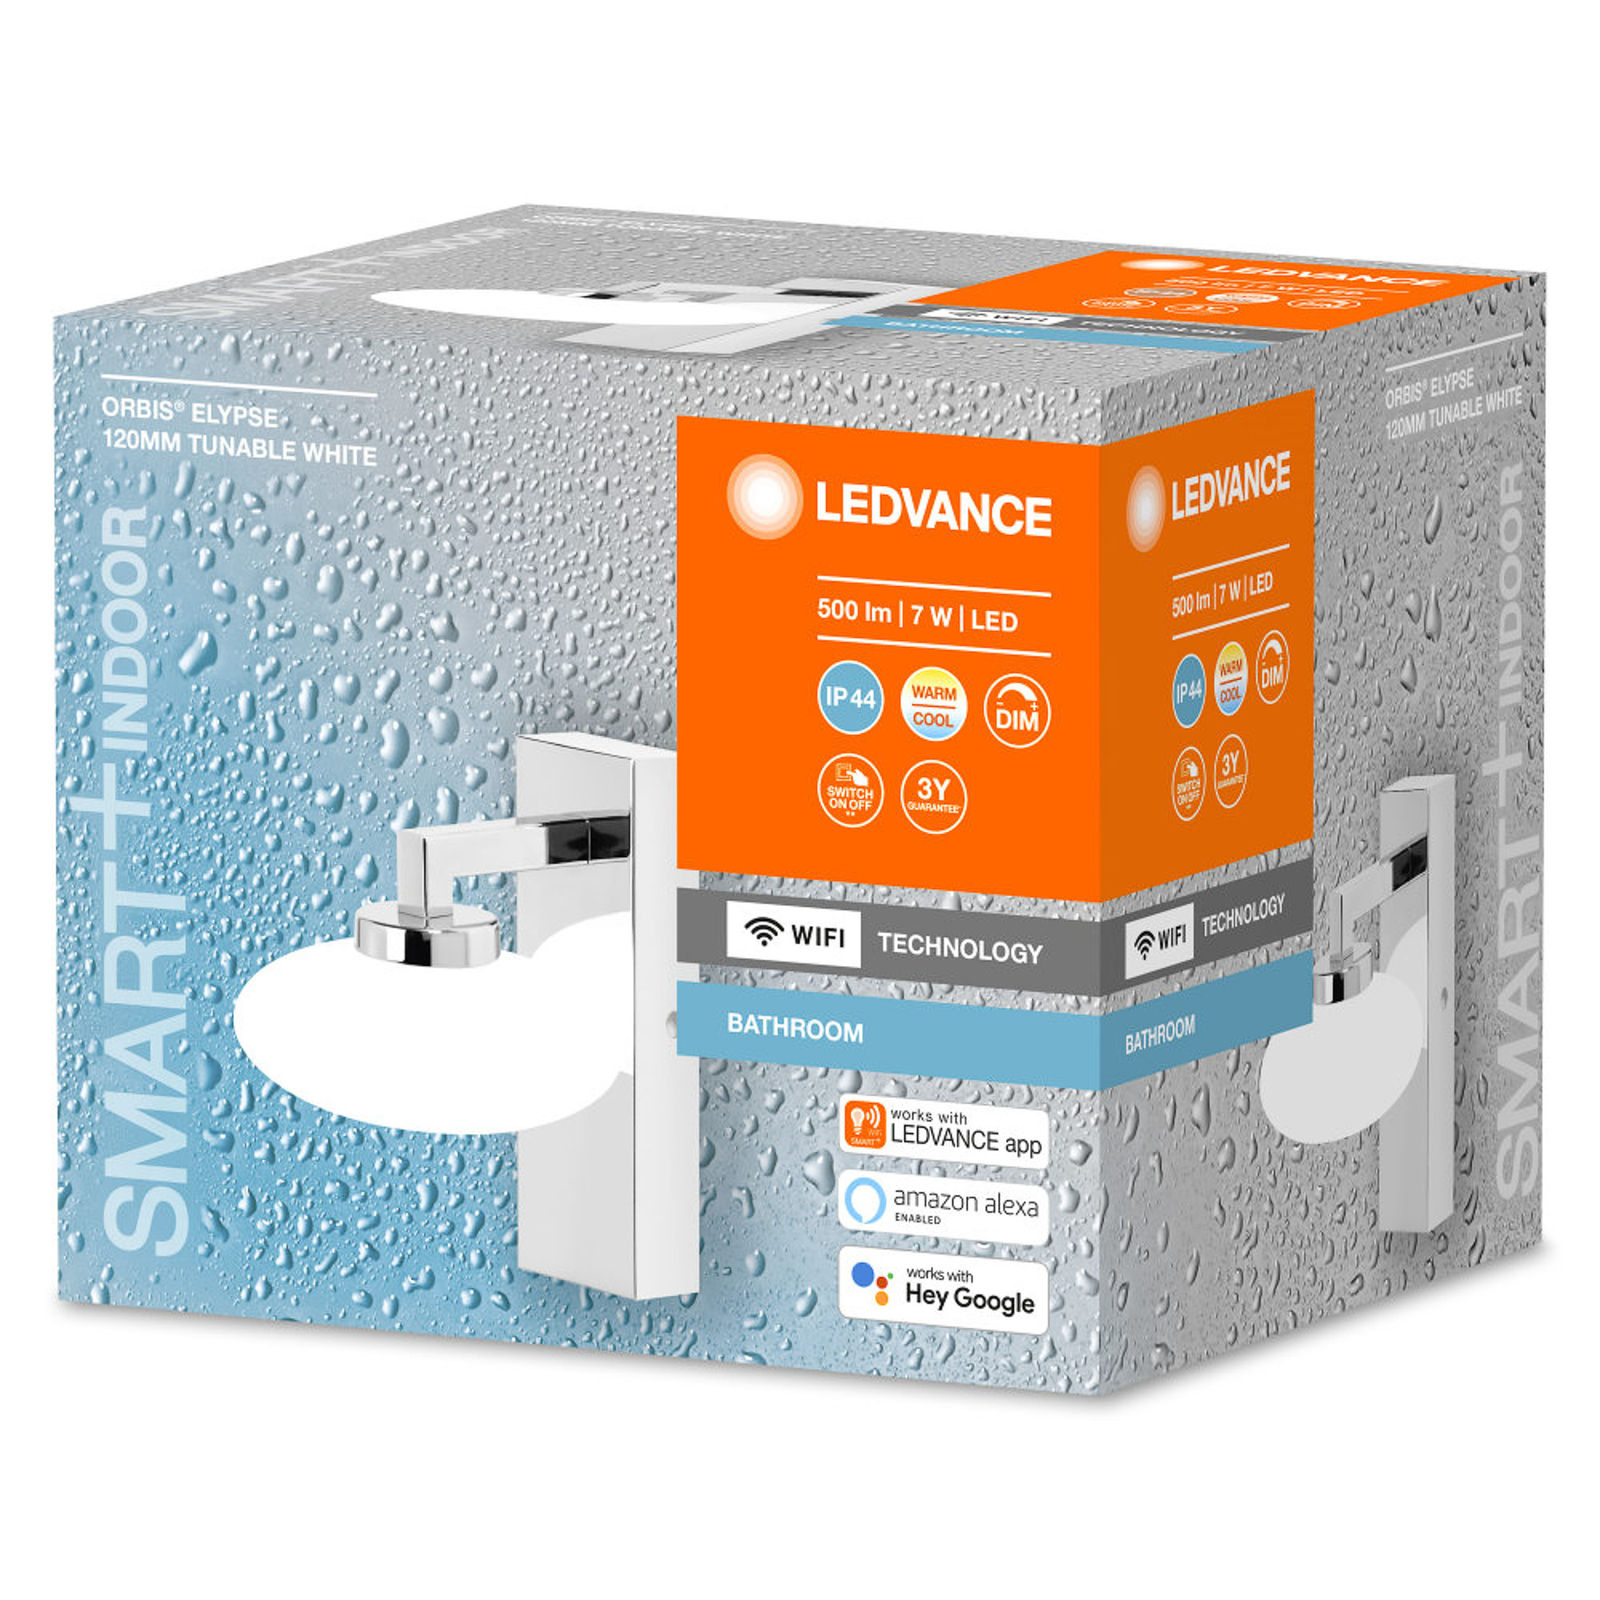 LEDVANCE SMART+ WiFi Orbis Wall Elypse, 1 lampe